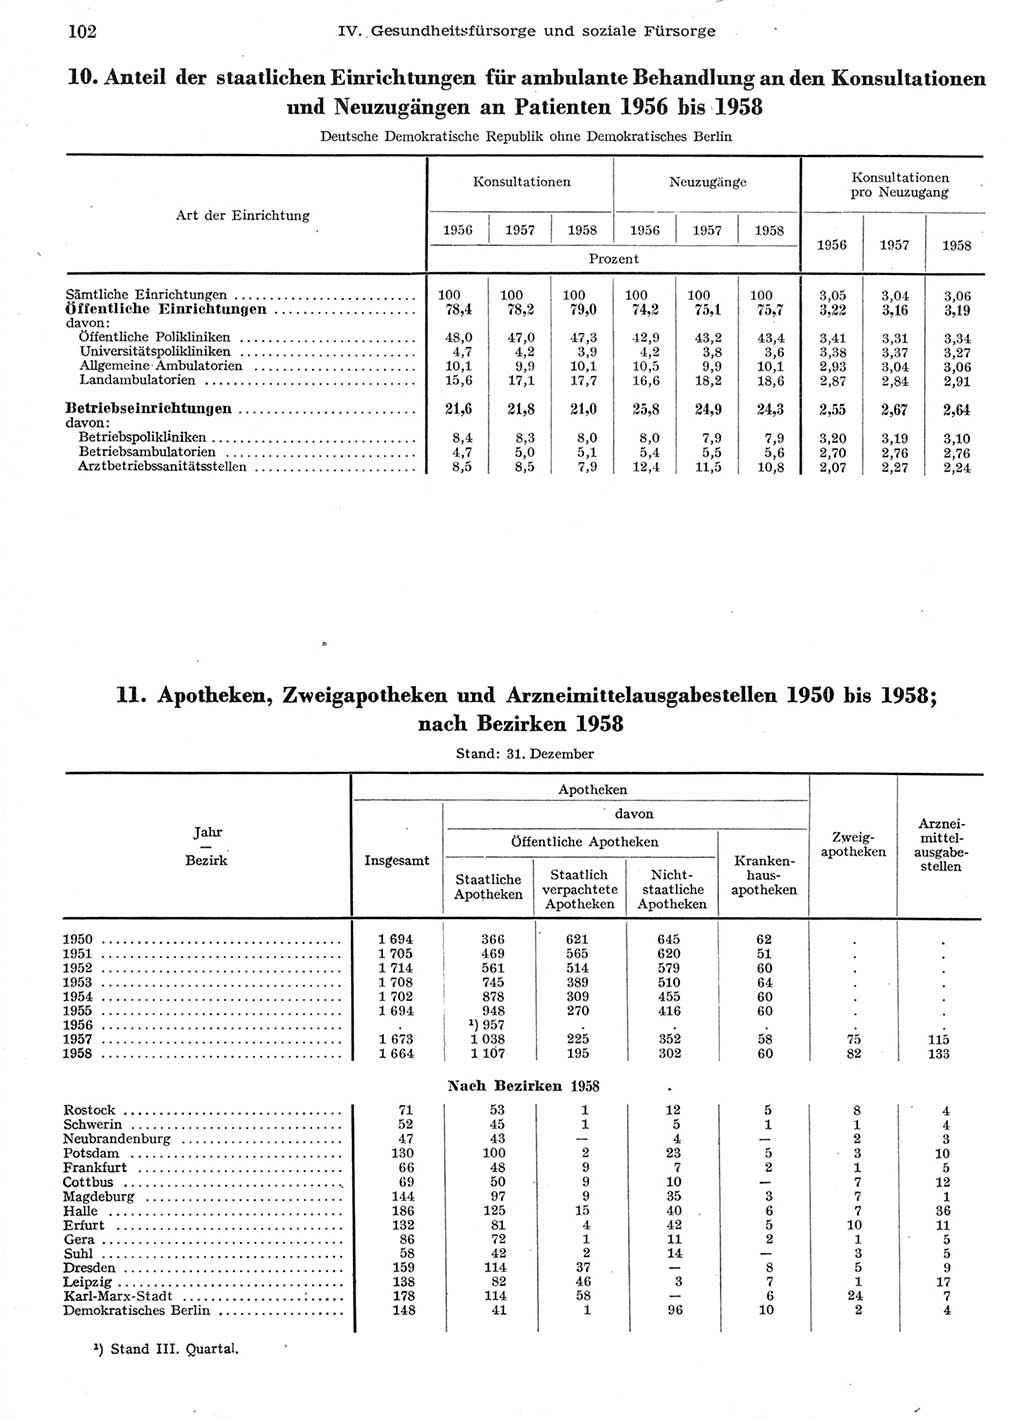 Statistisches Jahrbuch der Deutschen Demokratischen Republik (DDR) 1958, Seite 102 (Stat. Jb. DDR 1958, S. 102)